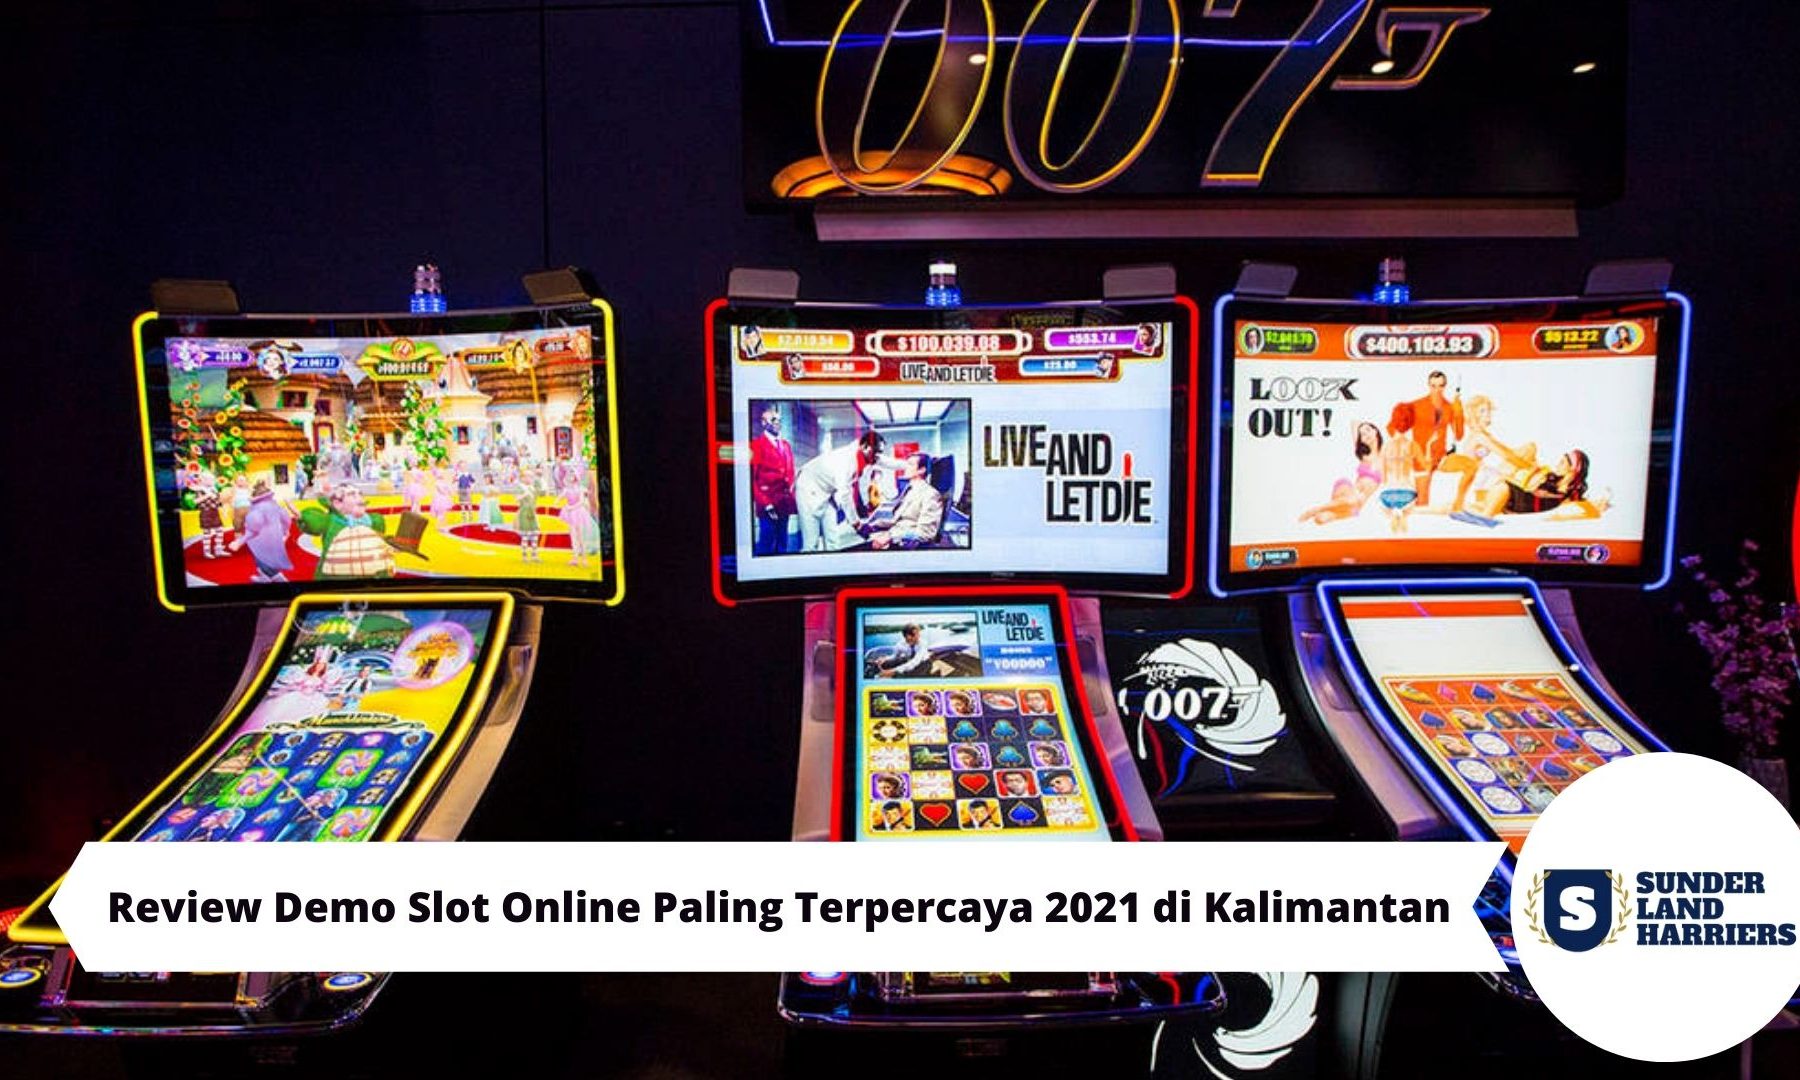 Review Demo Slot Online Paling Terpercaya 2021 di Kalimantan